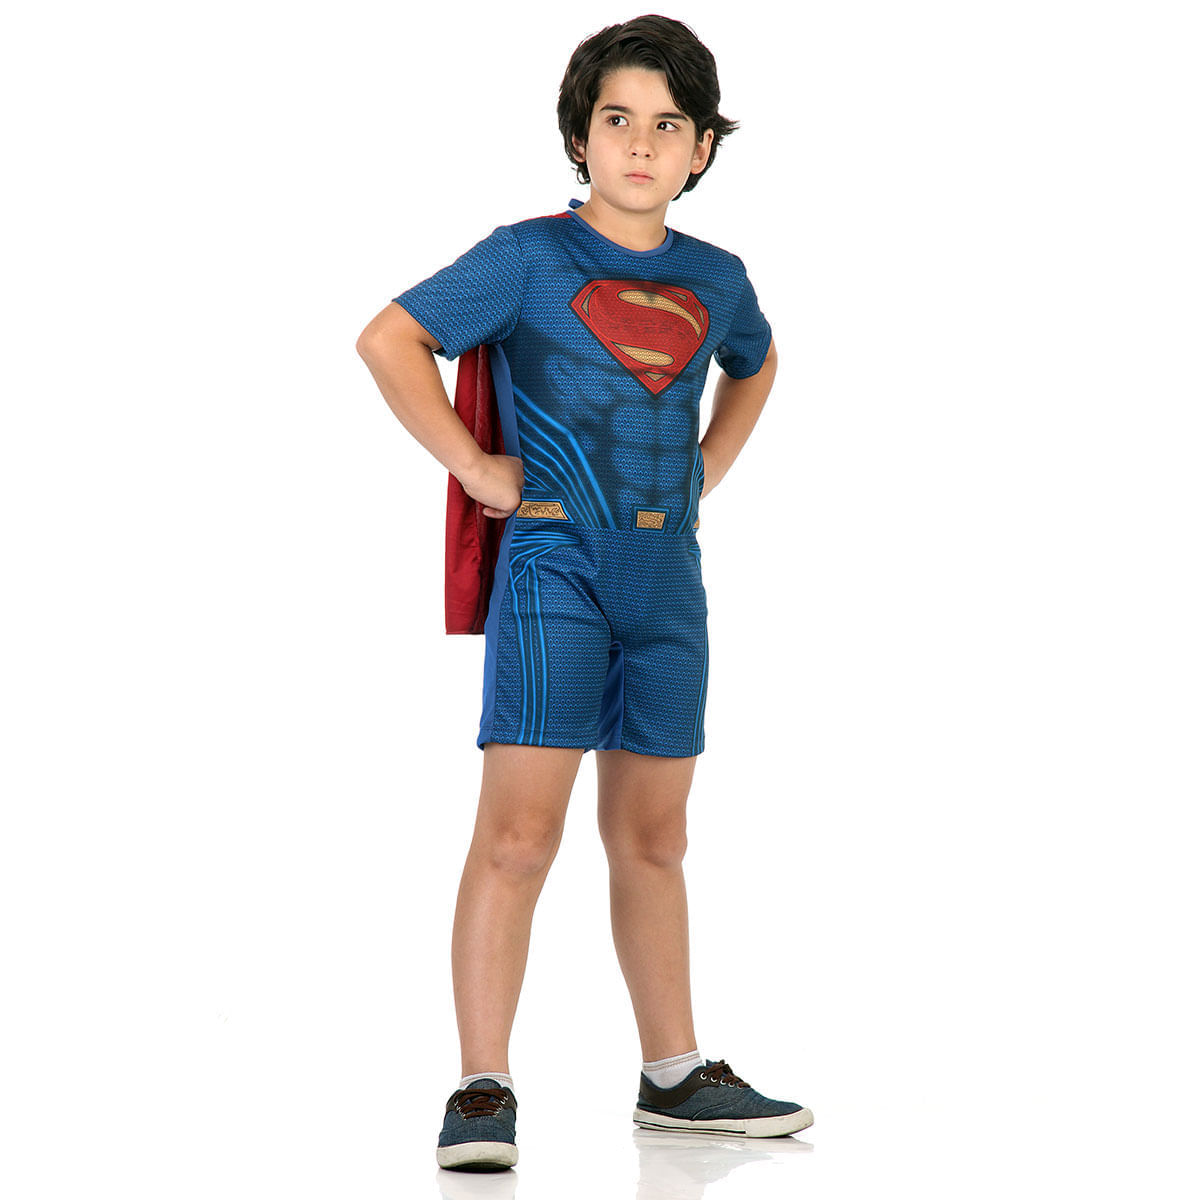 Fantasia Super Homem Infantil Curto - Liga da Justiça P / UNICA